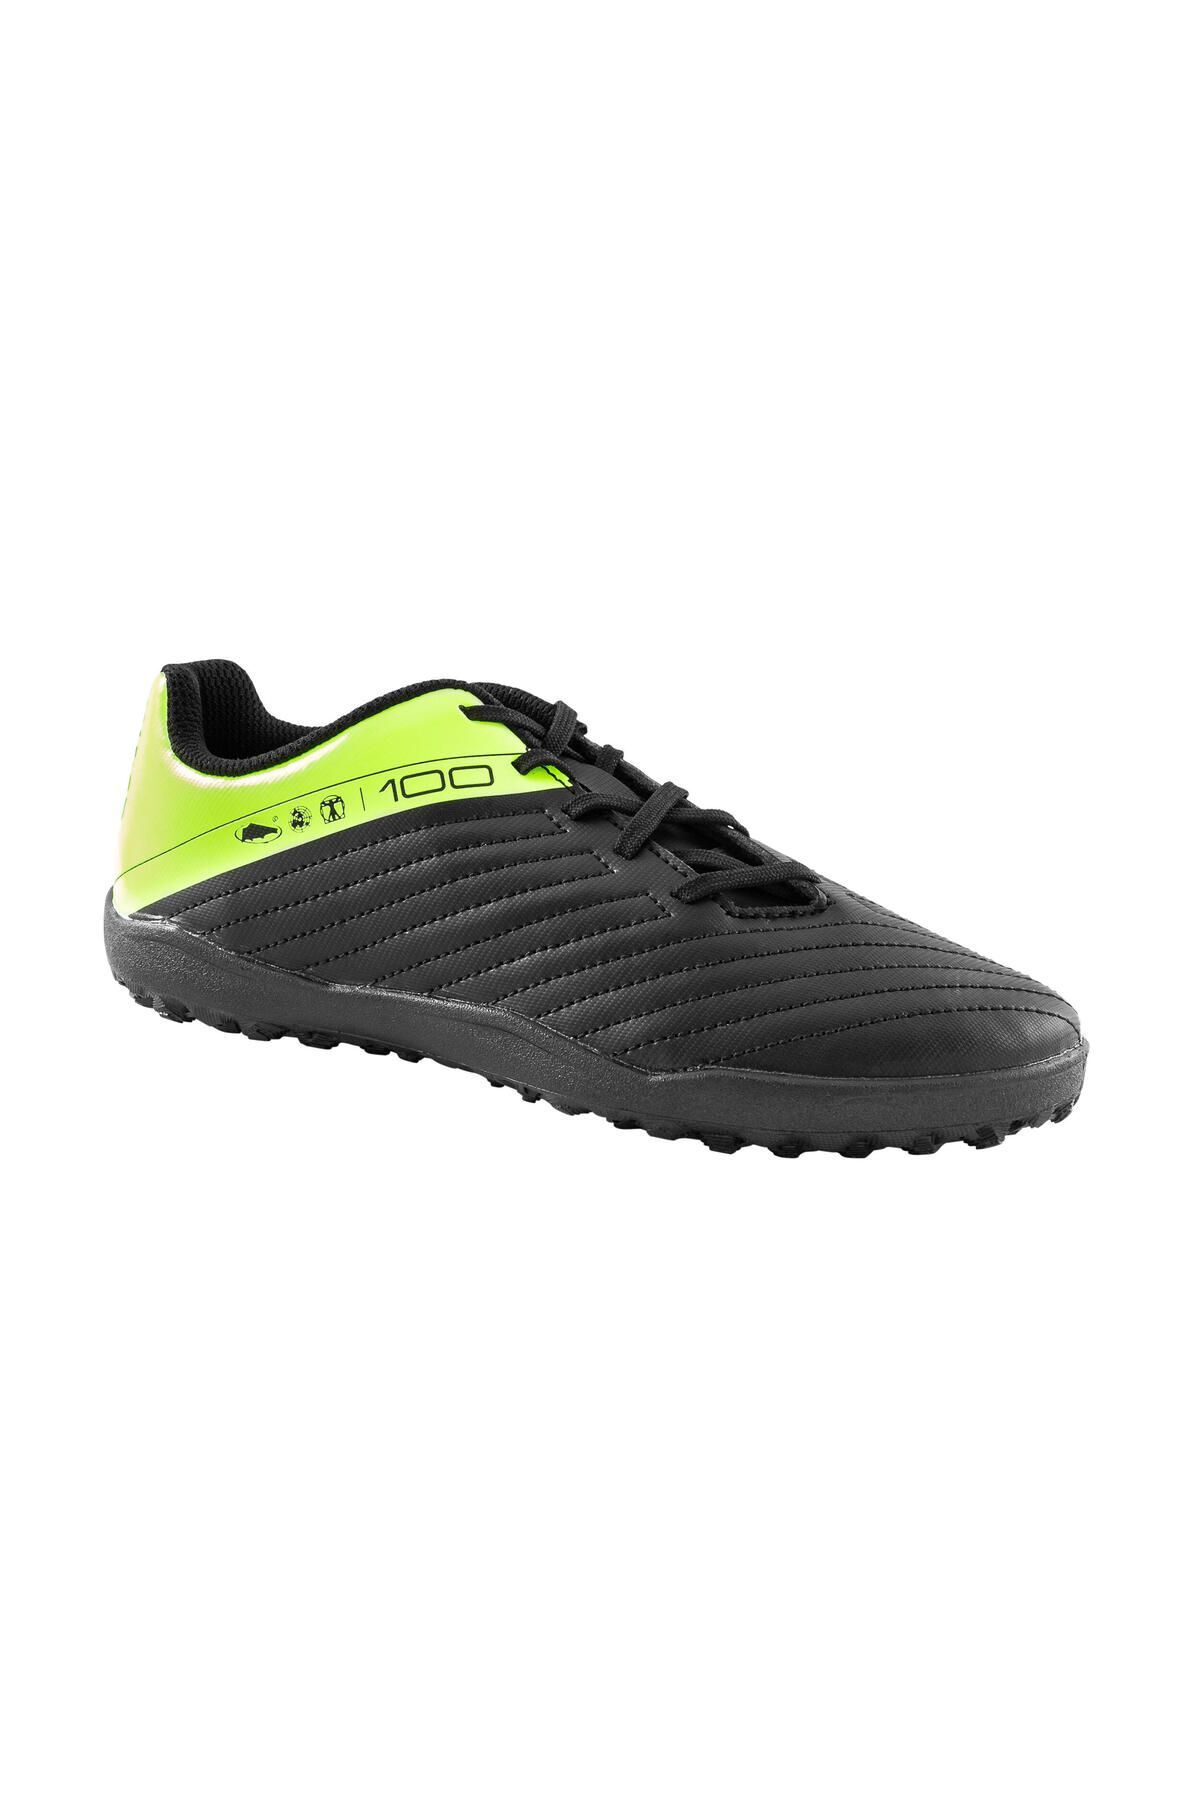 Decathlon Çocuk Krampon / Futbol Ayakkabısı - Siyah / Sarı - 100 Turf